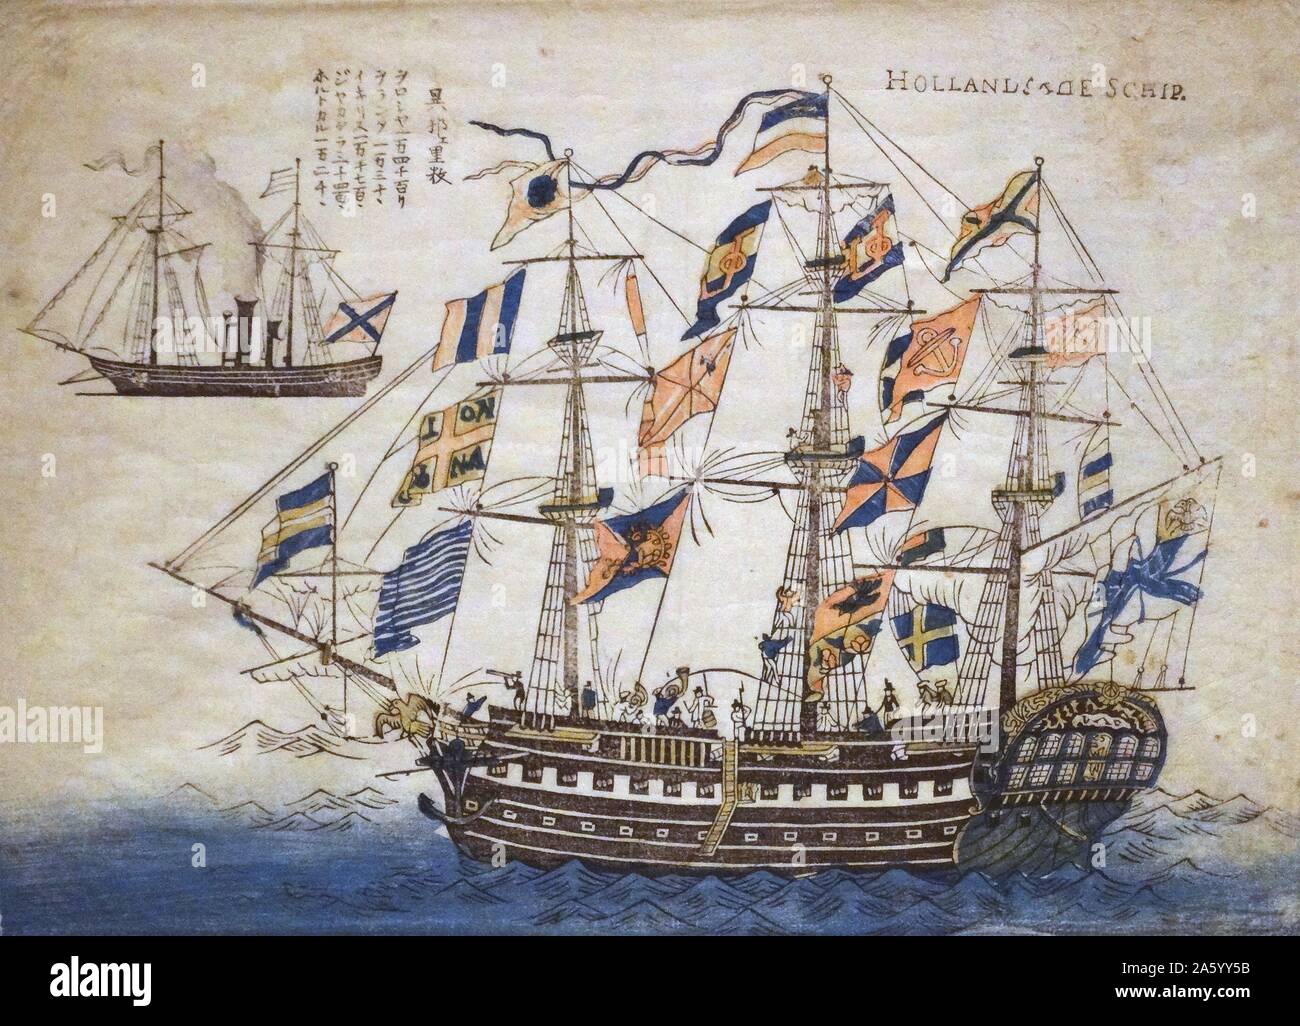 Colore stampa woodblock raffigurante una nave Olandese Olandese della Compagnia delle Indie Orientali. Datata 1860 Foto Stock